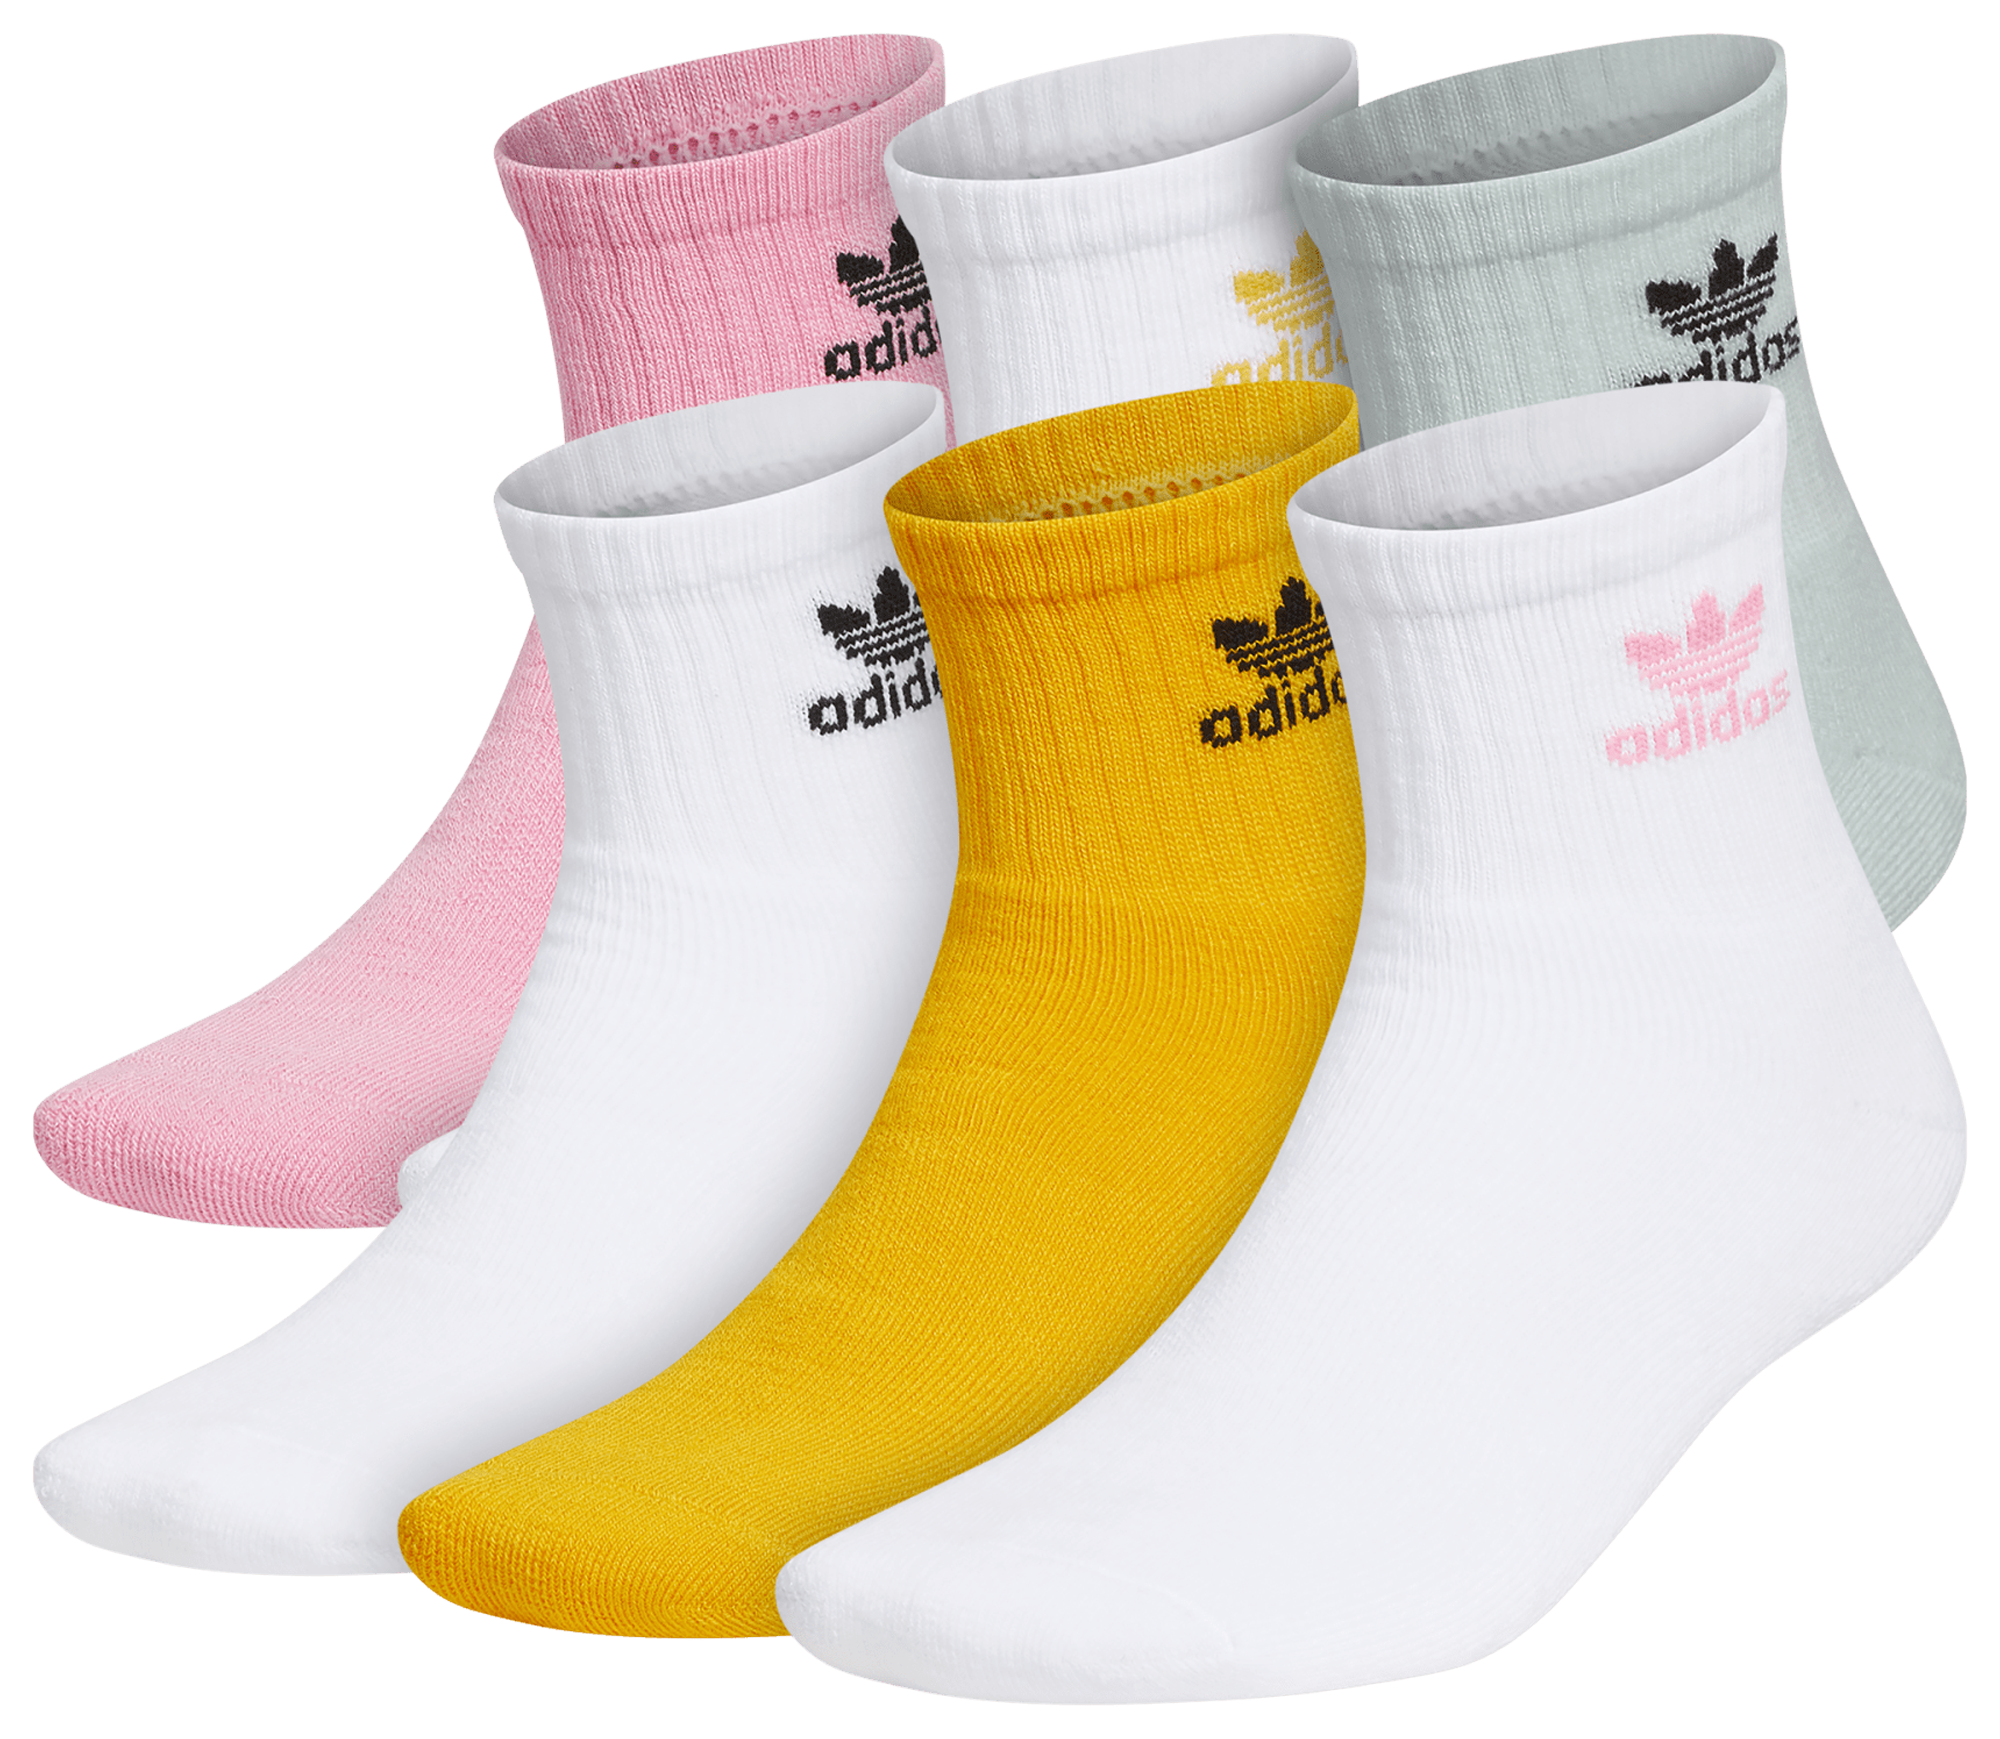 adidas OG 6 pair Quarter Socks - Men's